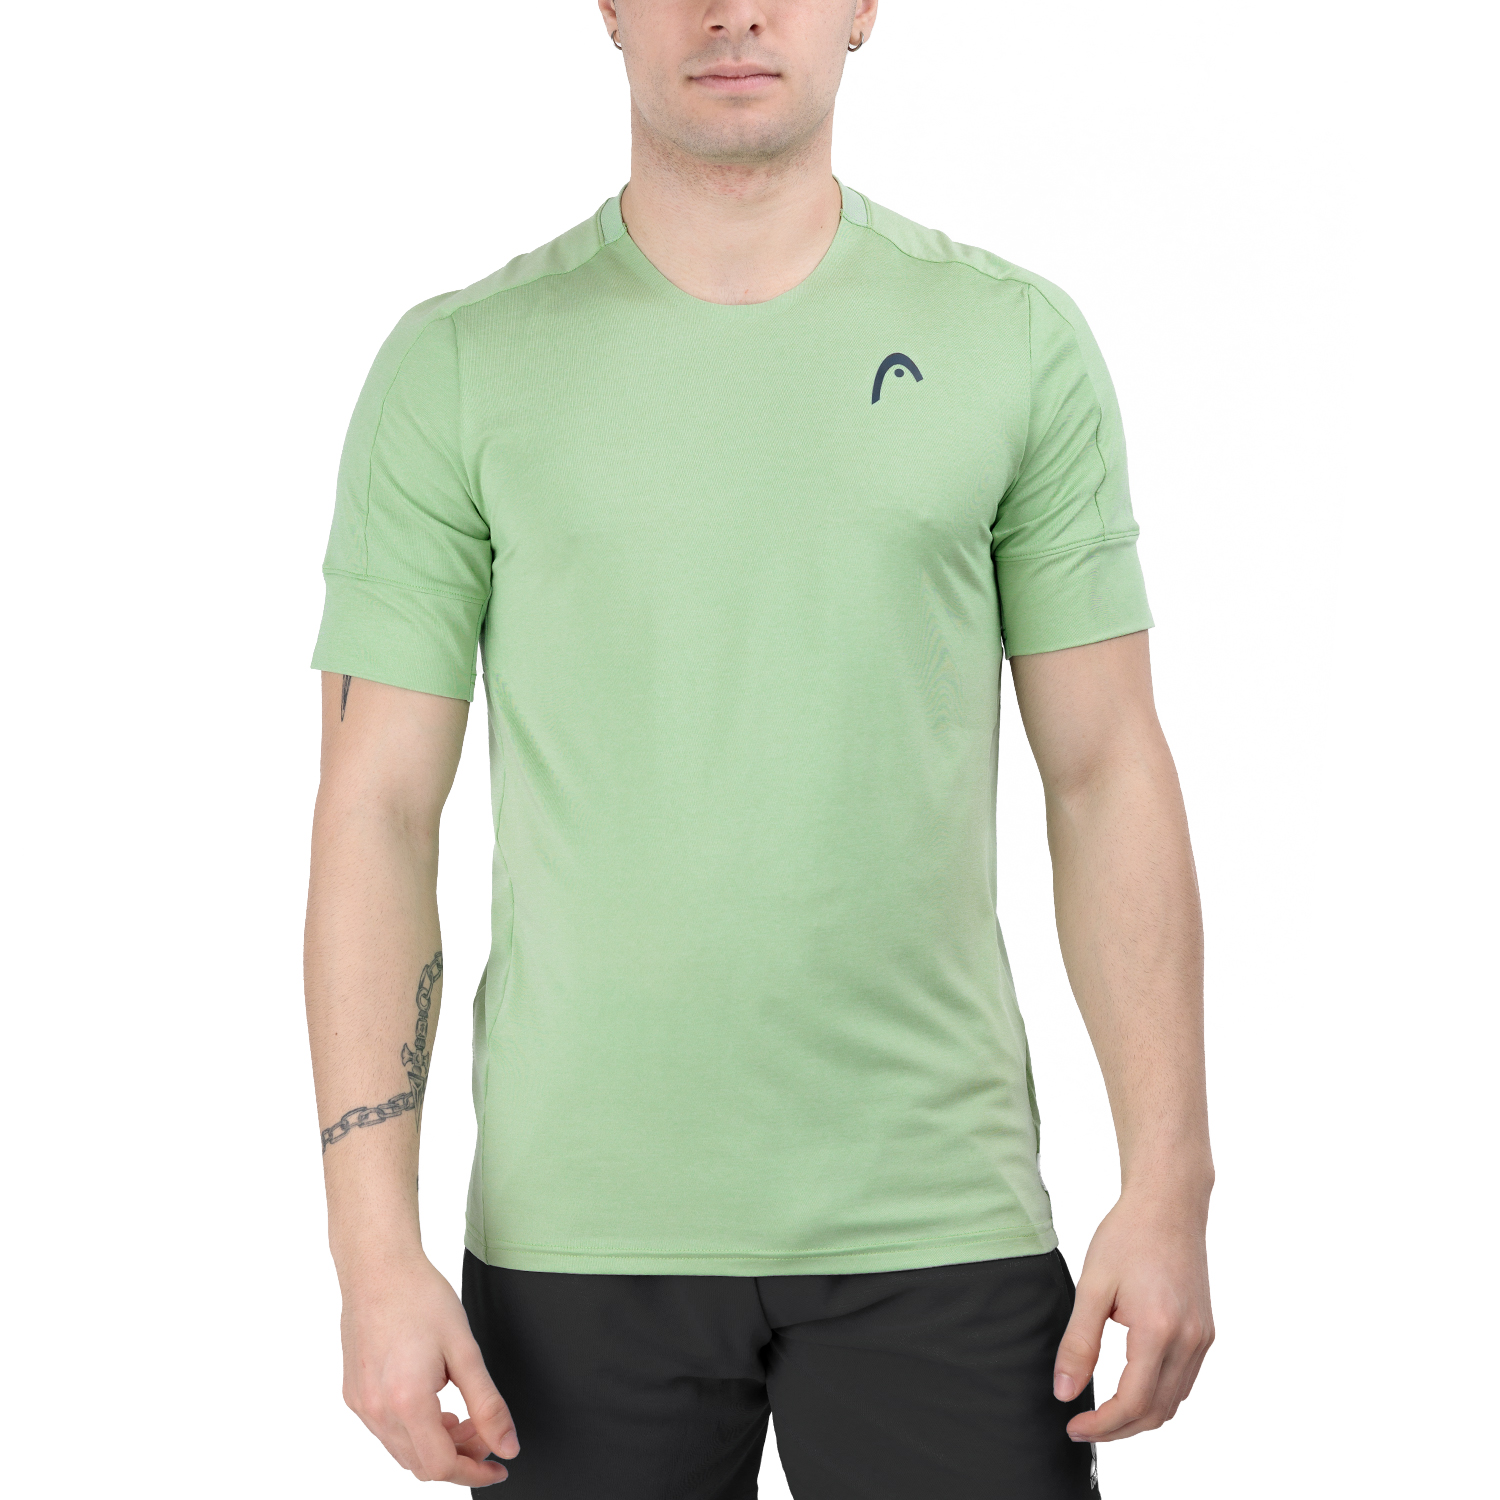 Head Play Tech T-Shirt - Celery Green